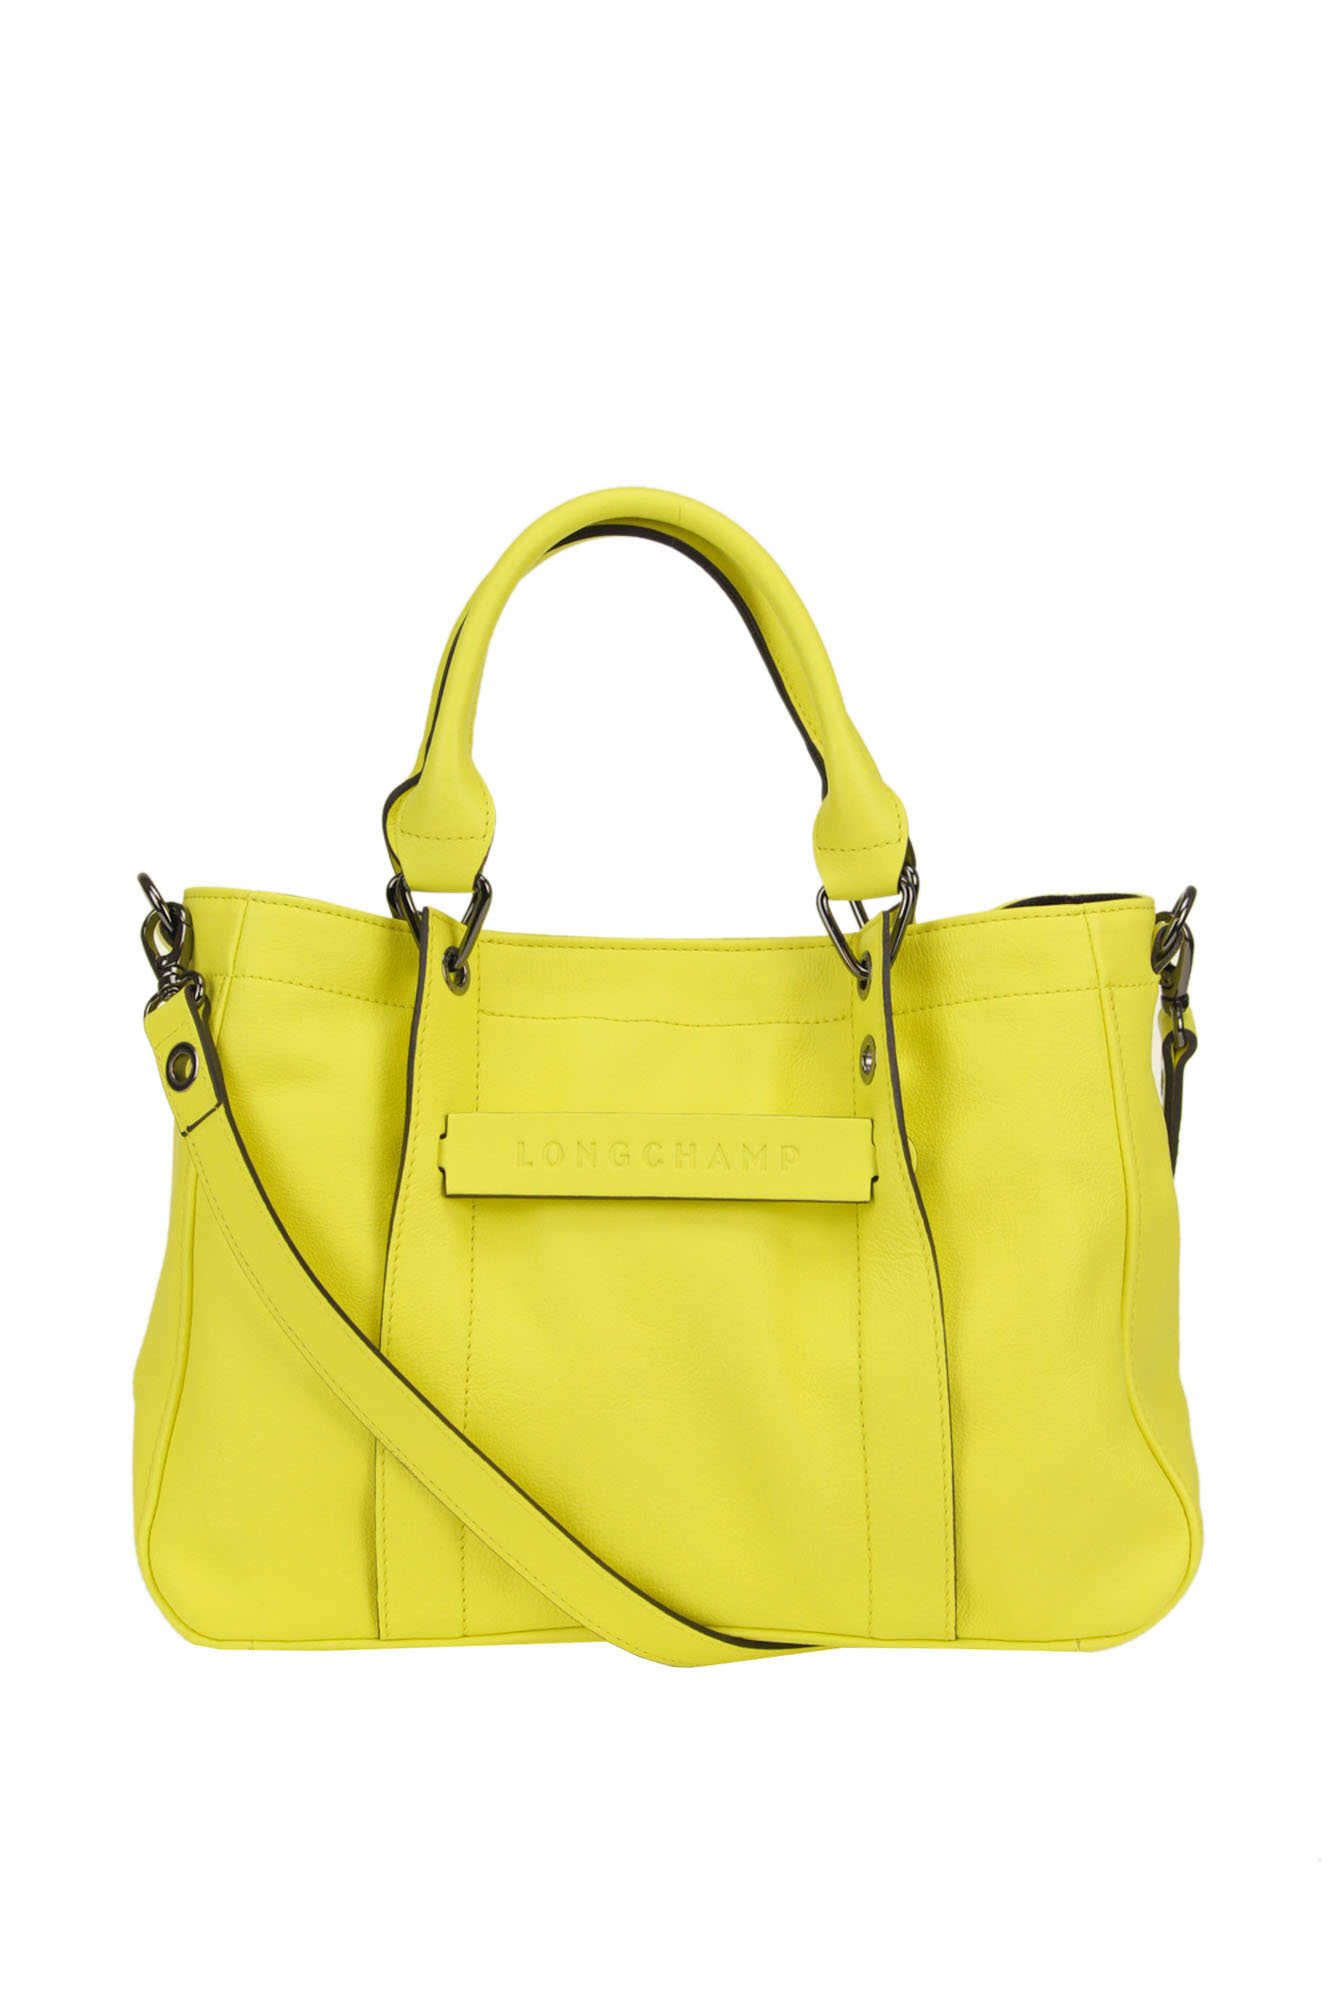 Longchamp 3d Tote Bag In Yellow